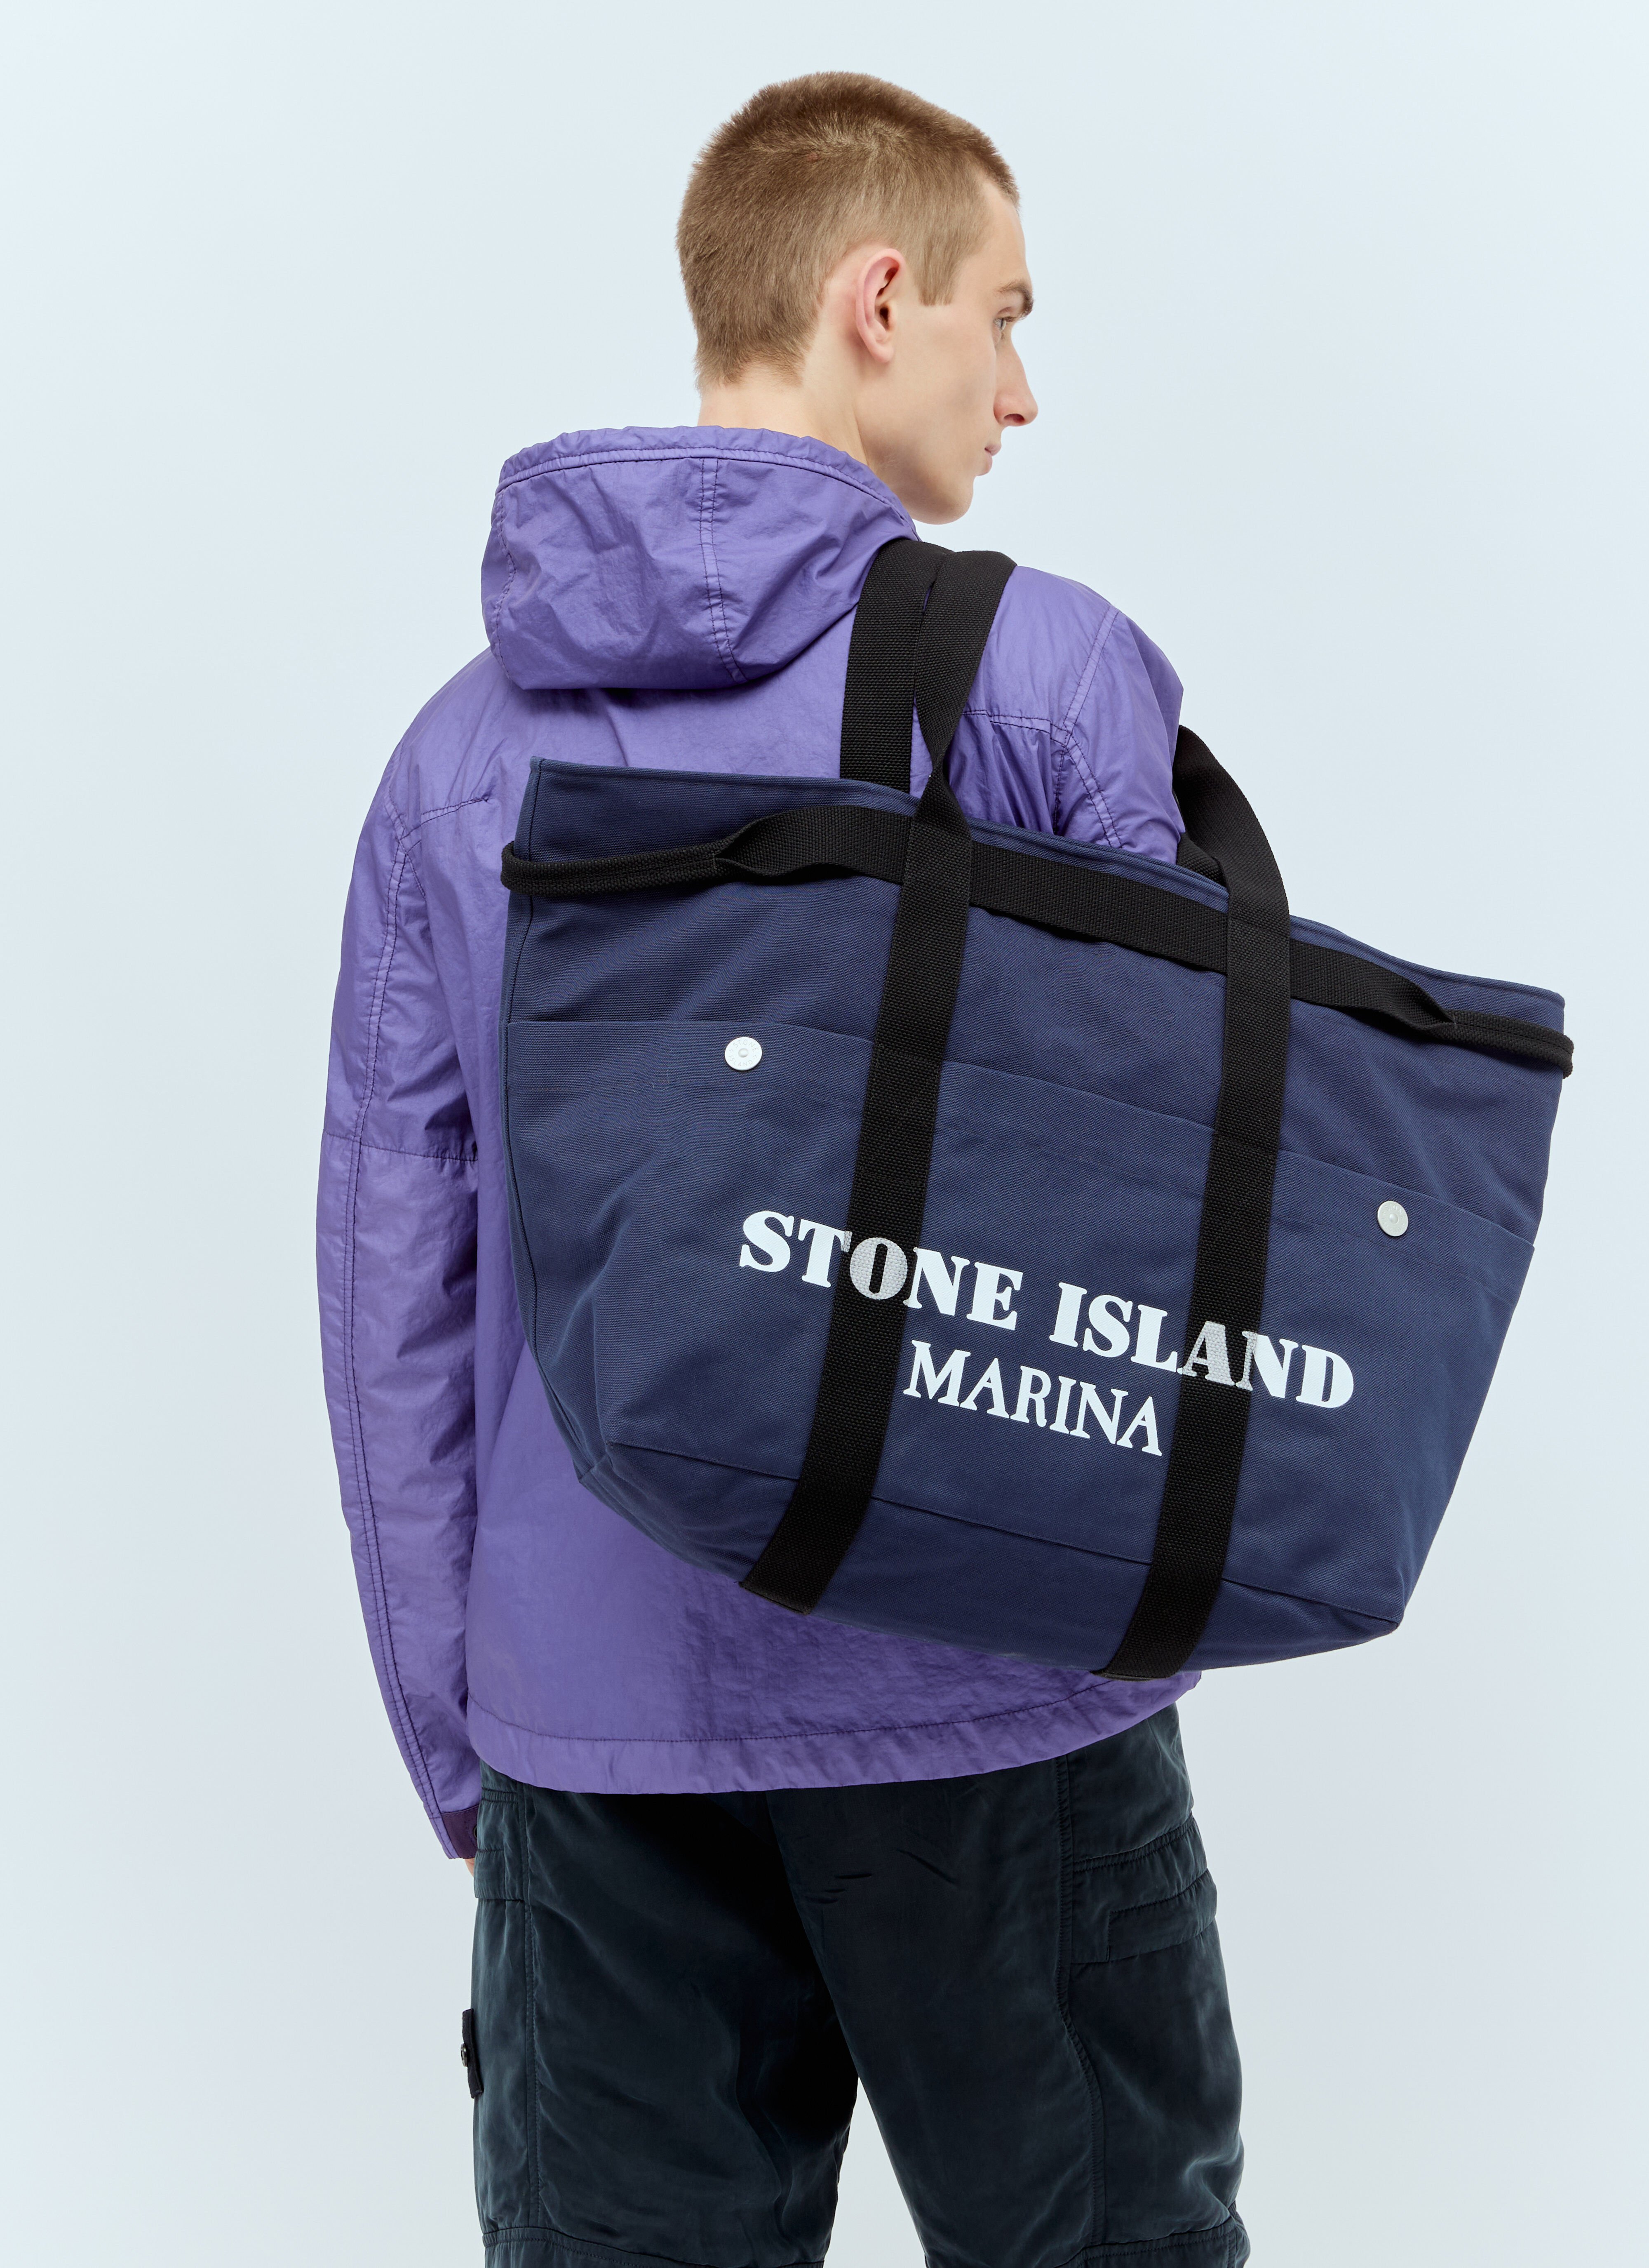 Stone Island Marina Canvas Tote Bag Grey sto0156026